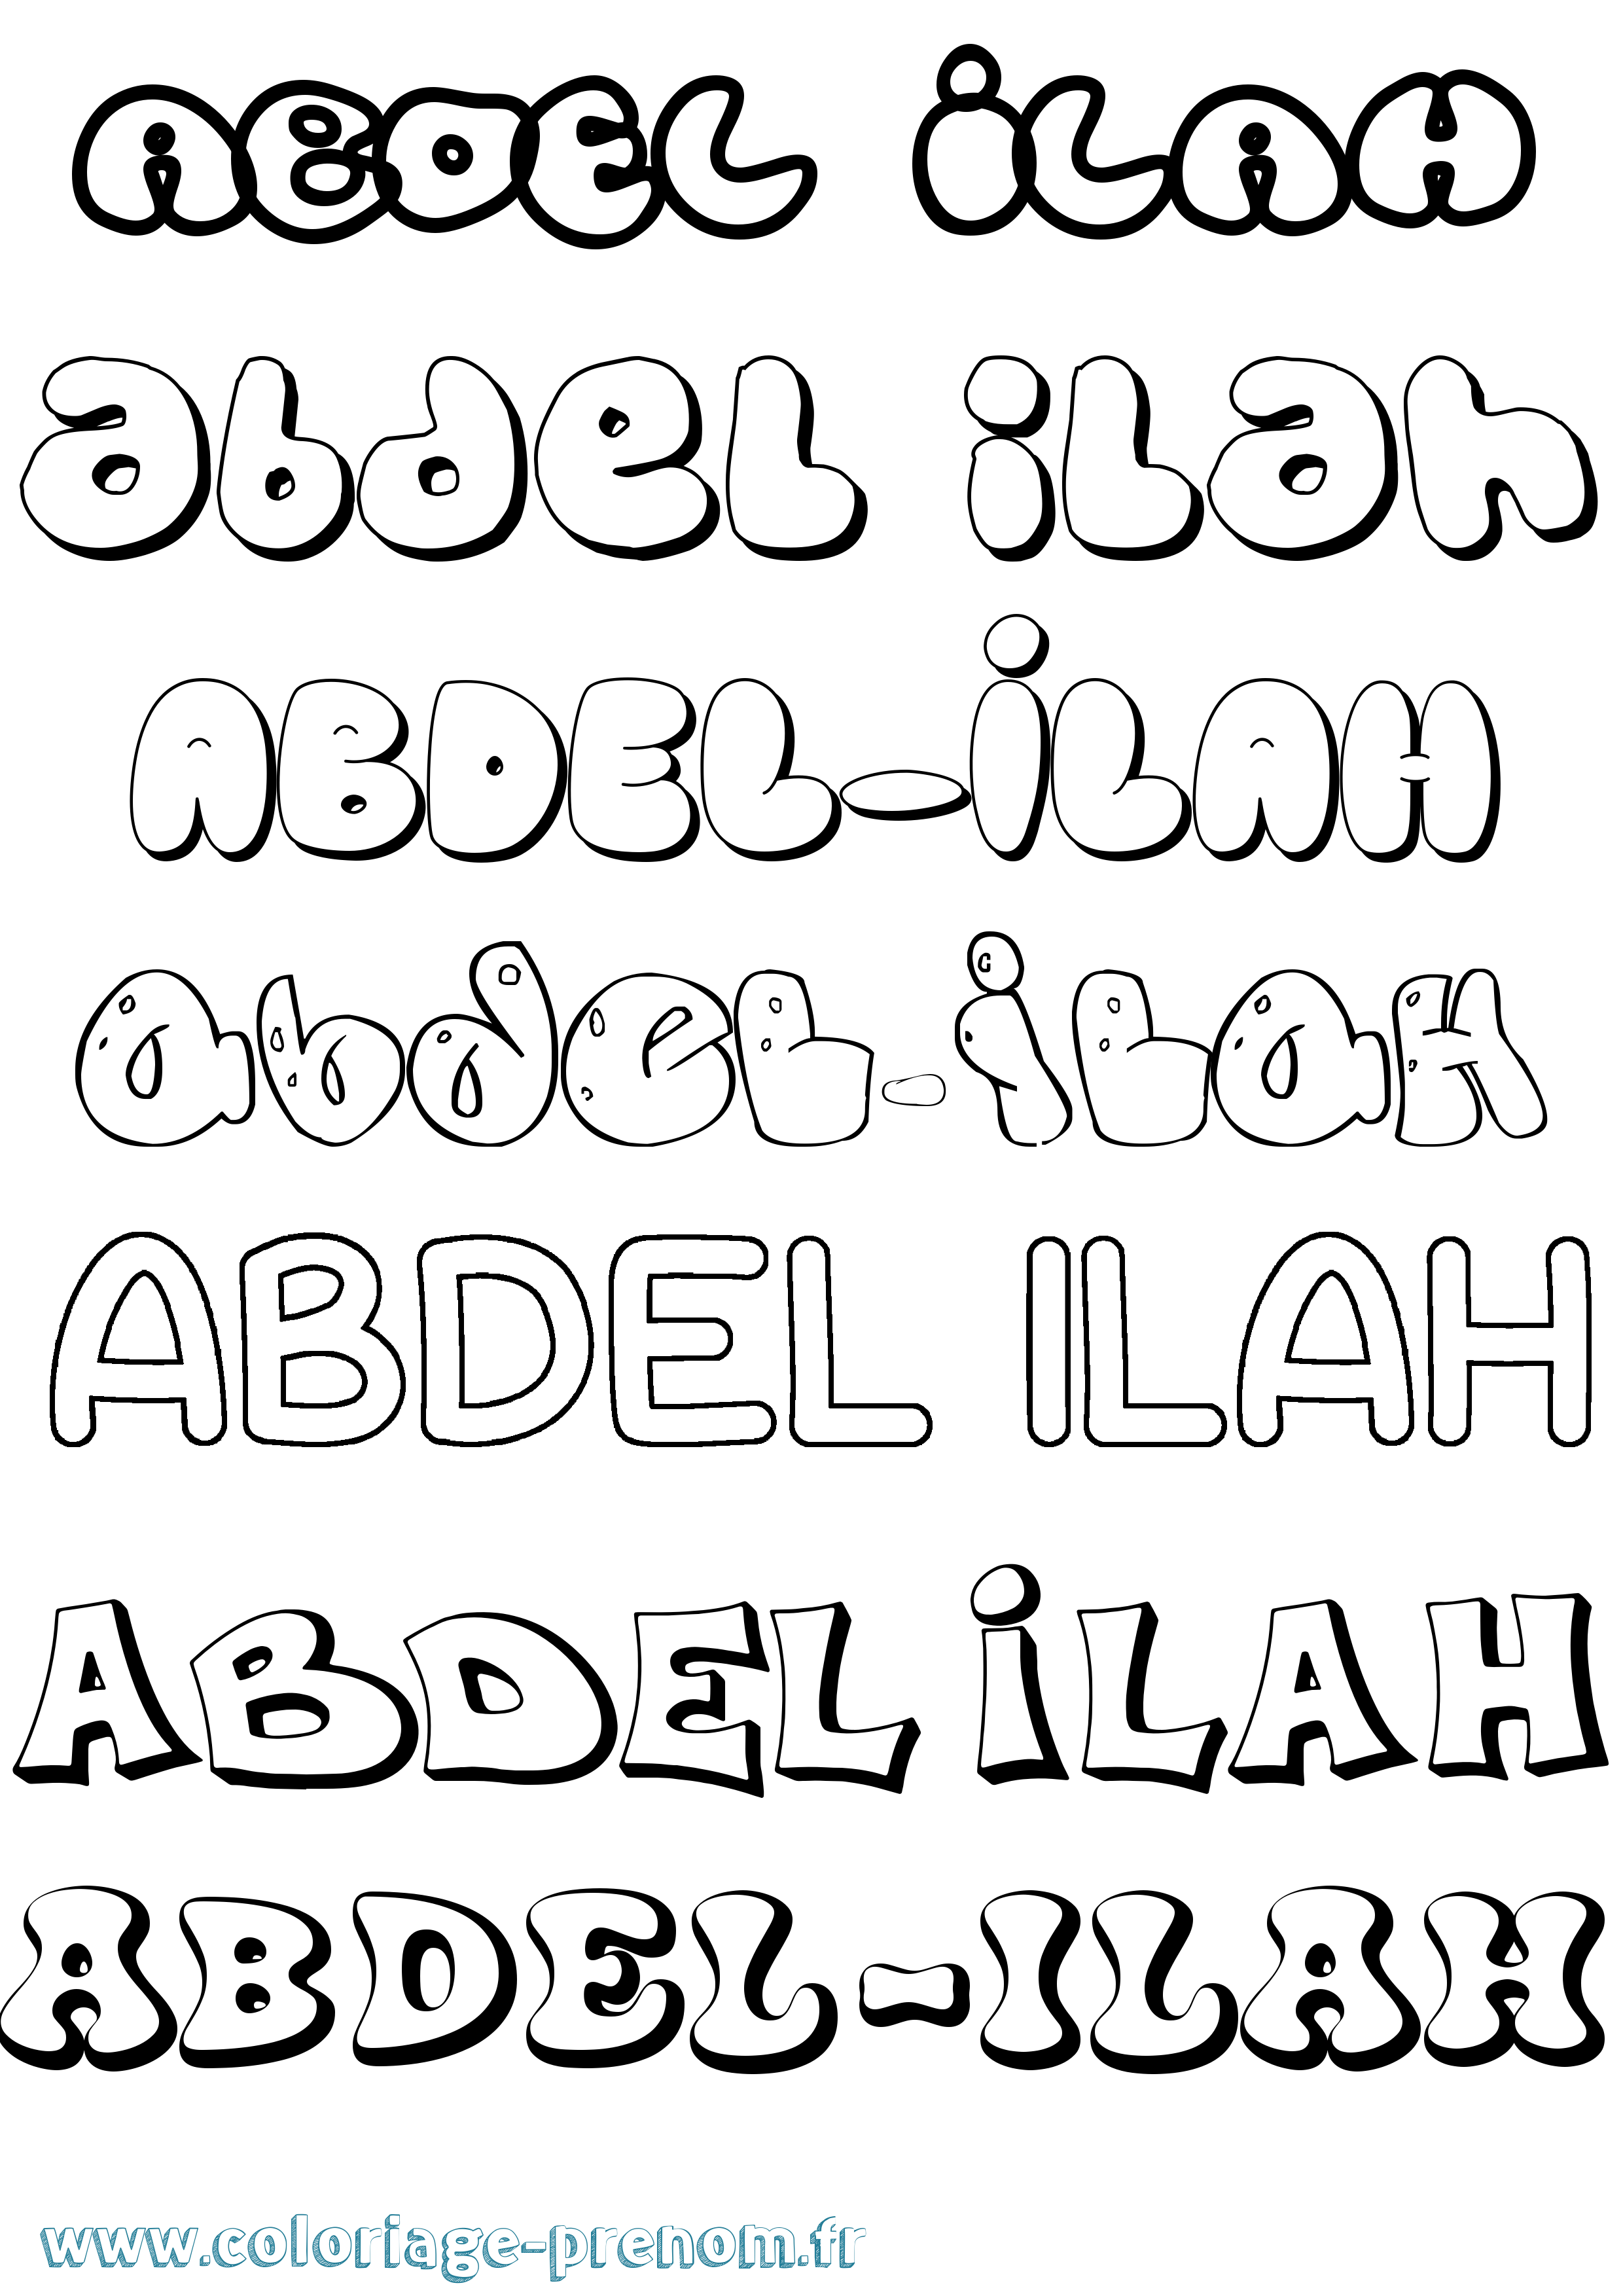 Coloriage prénom Abdel-Ilah Bubble